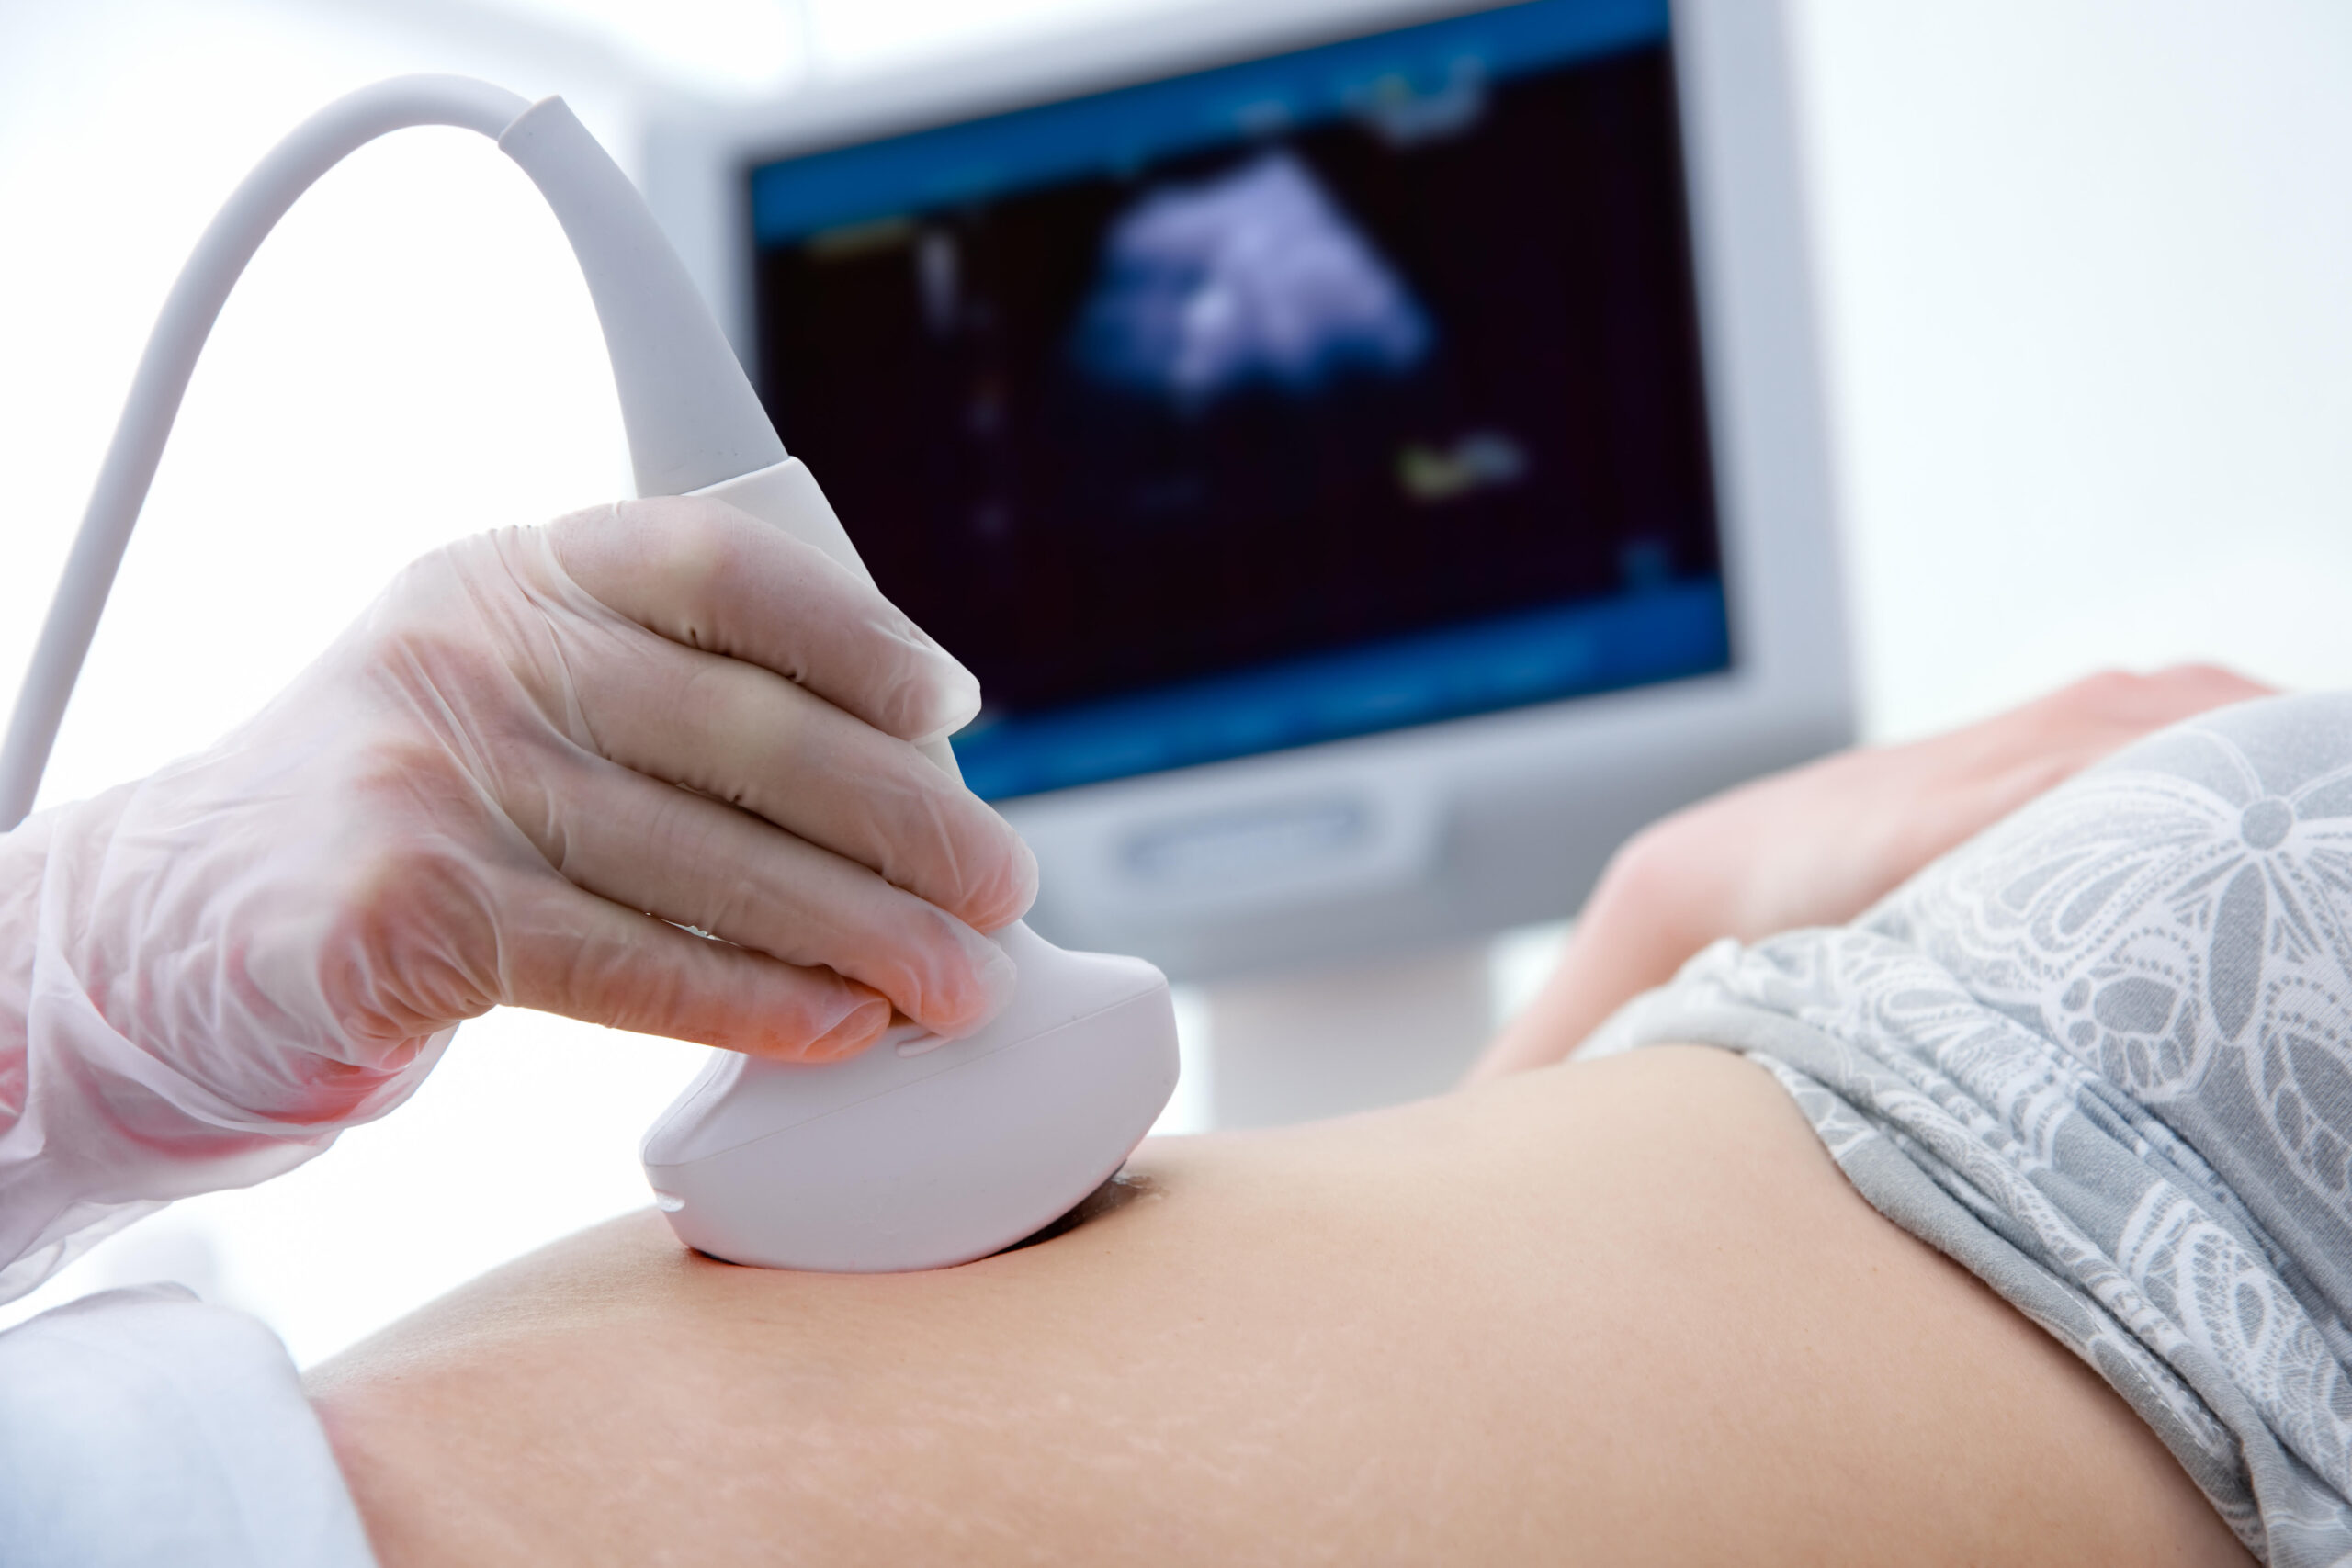 Specialist ultrasound scans